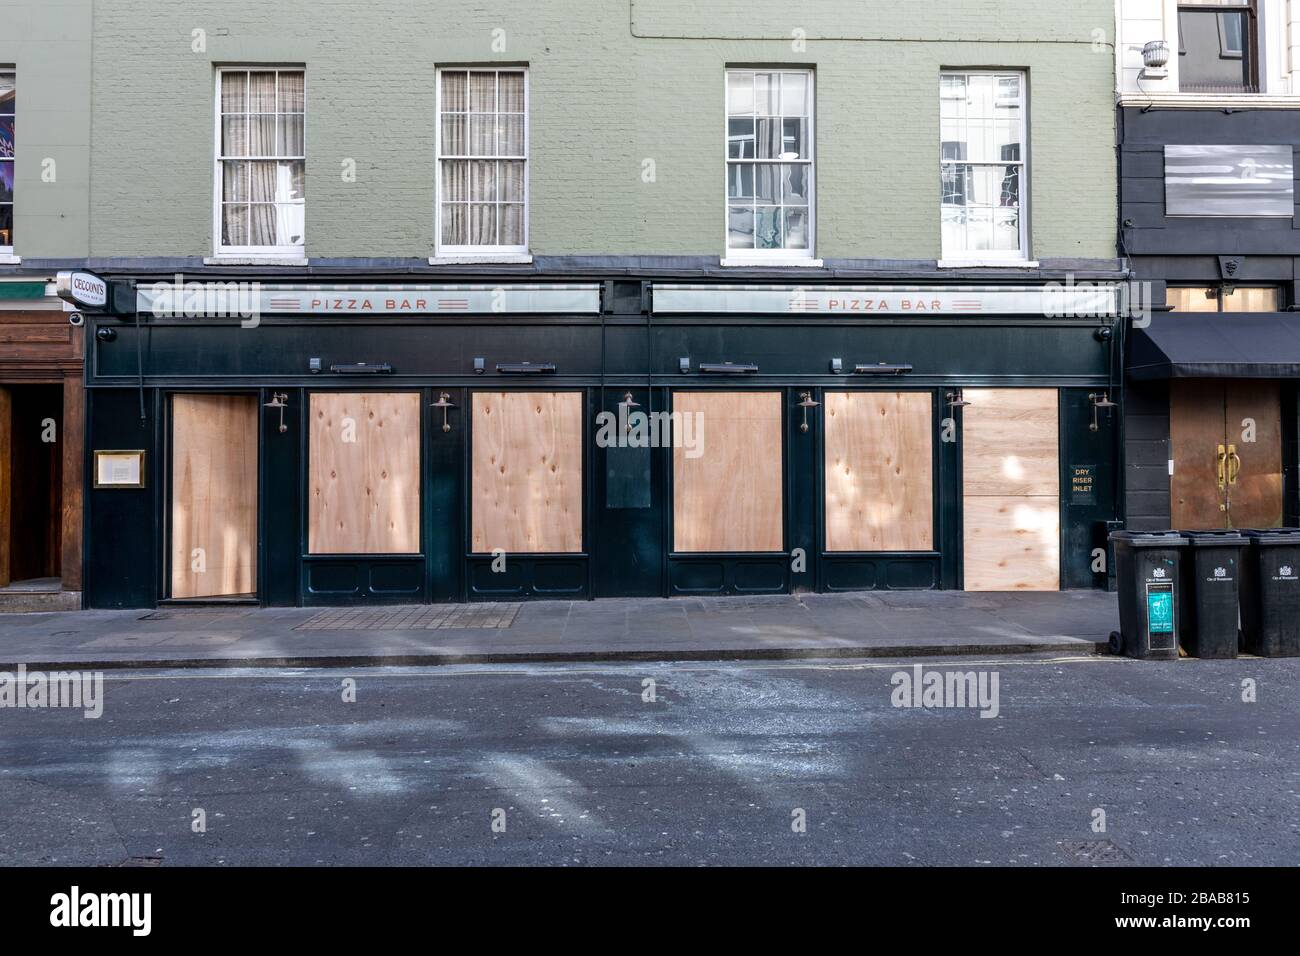 Londres - Angleterre - Old Compton Street - 21032020 - les rues vides alors que le virus Corona frappe Londres forçant de nombreuses entreprises à fermer ou à fournir un service réduit - Photographe : Brian Duffy Banque D'Images